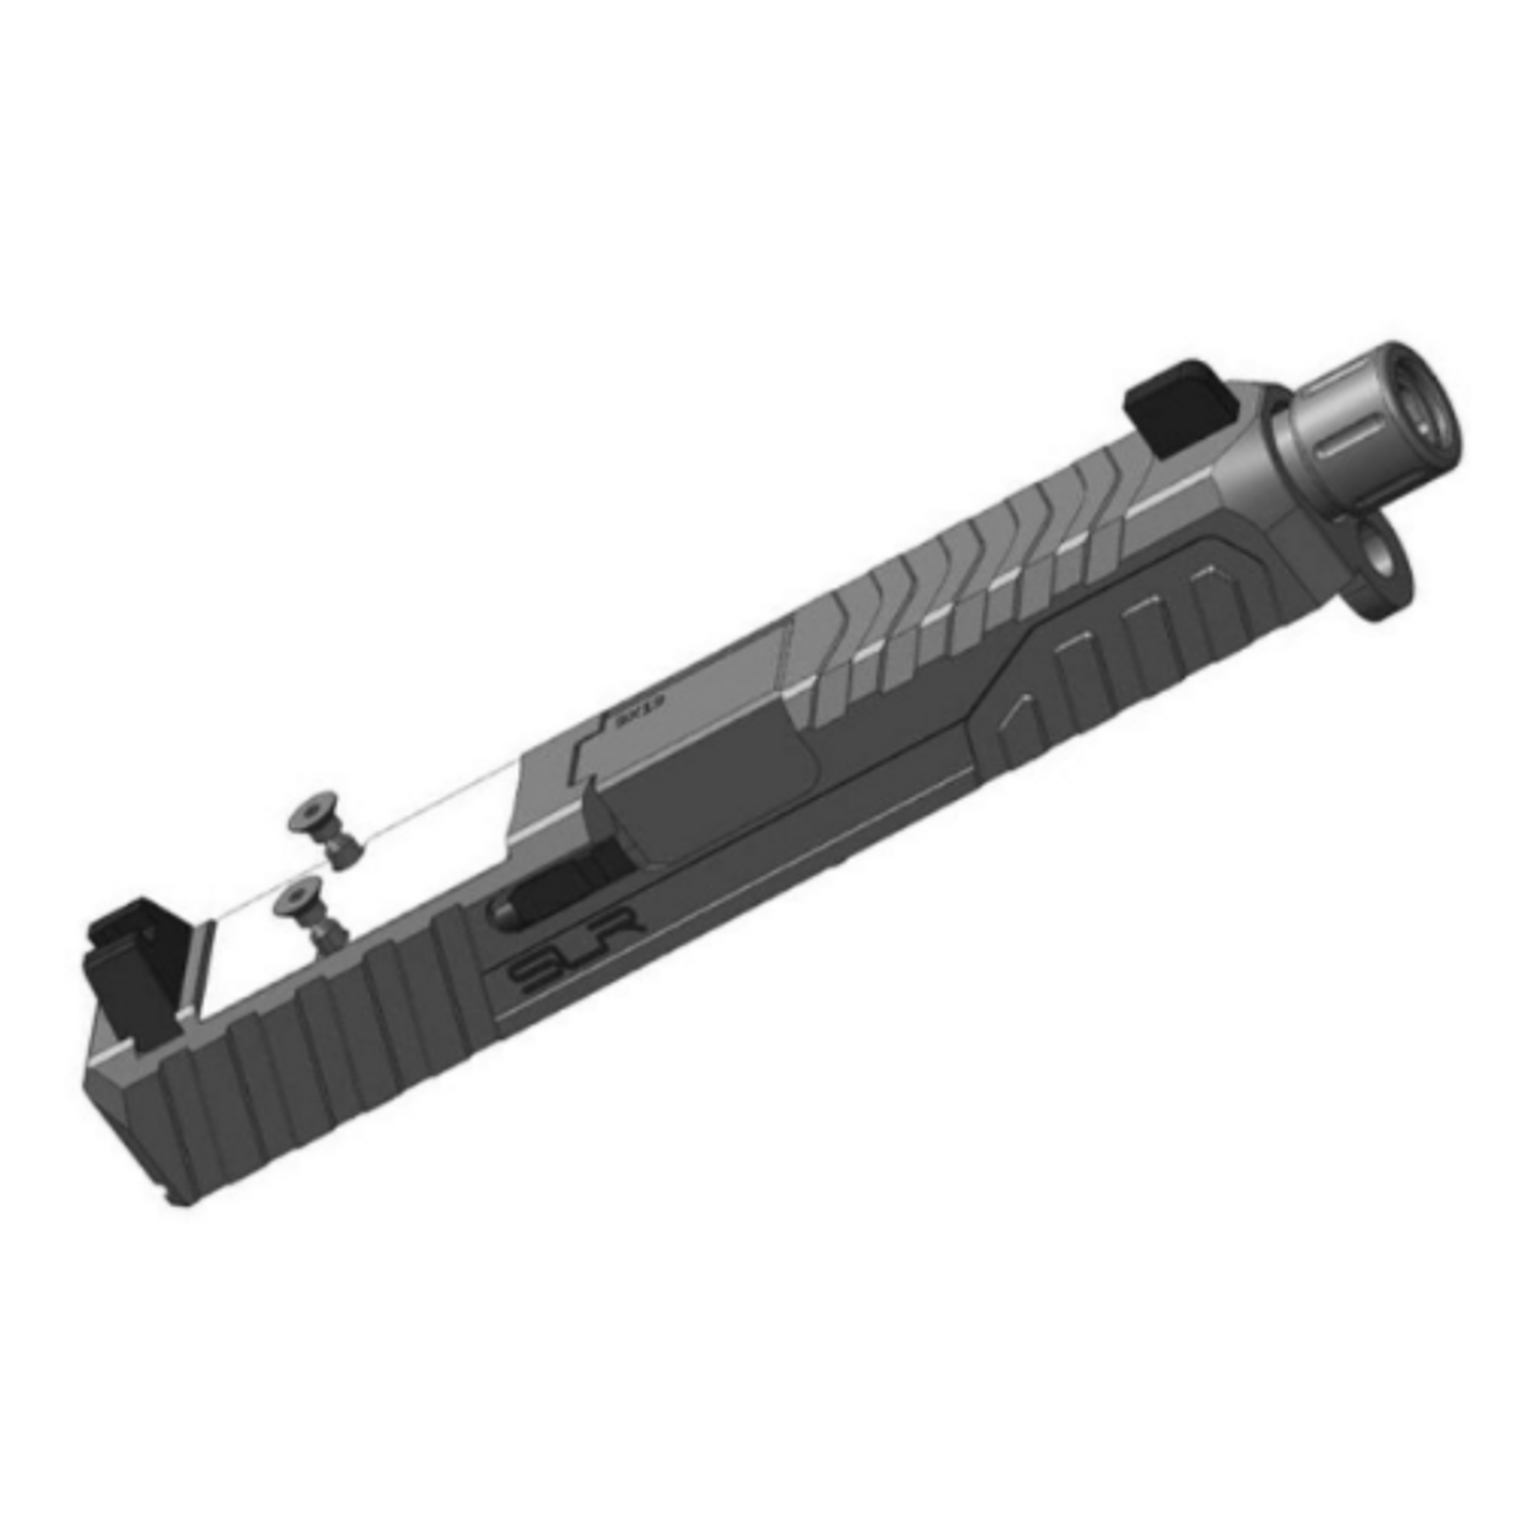 Dytac SLR Rifleworks RMR Slide Kit for Elite Force GLOCK 19 Gen.3 Airsoft GBB Pistols